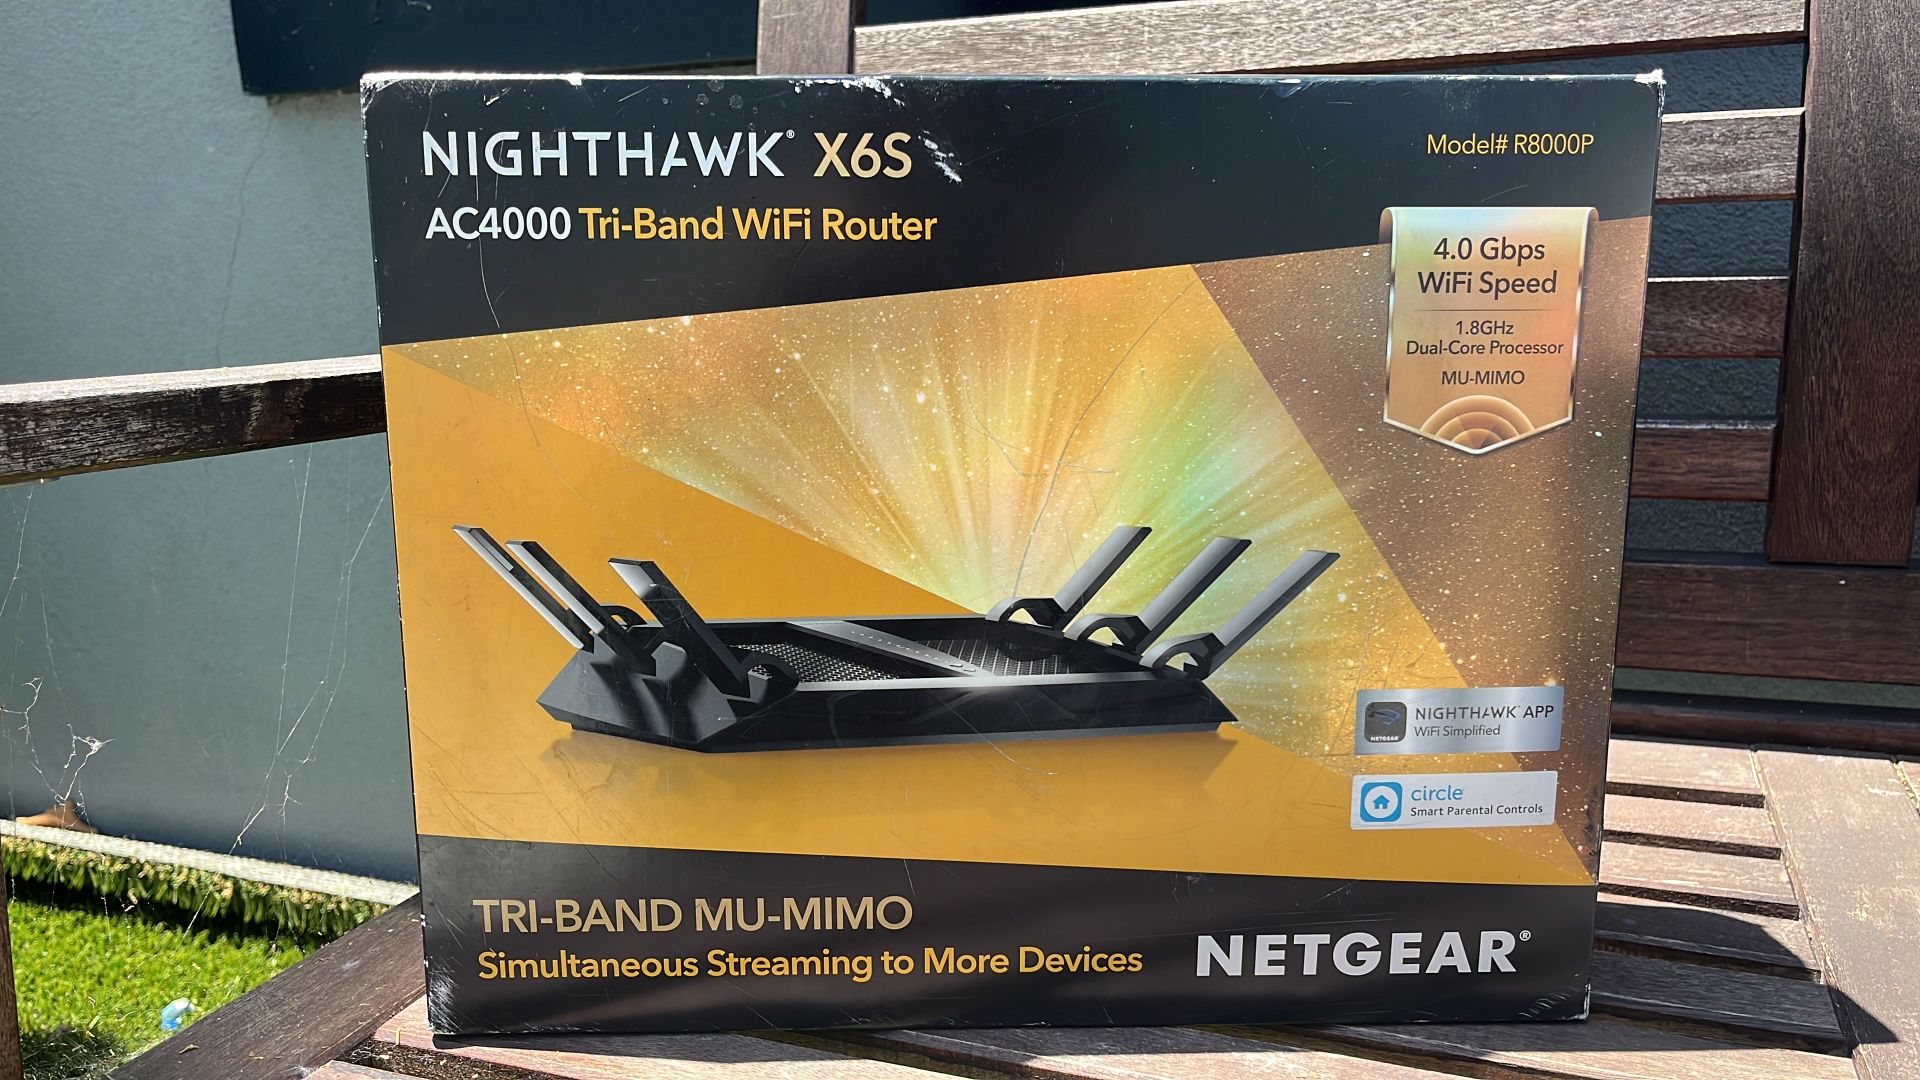 NETGEAR Nighthawk X6S AC4000 Tri-band WiFi Router